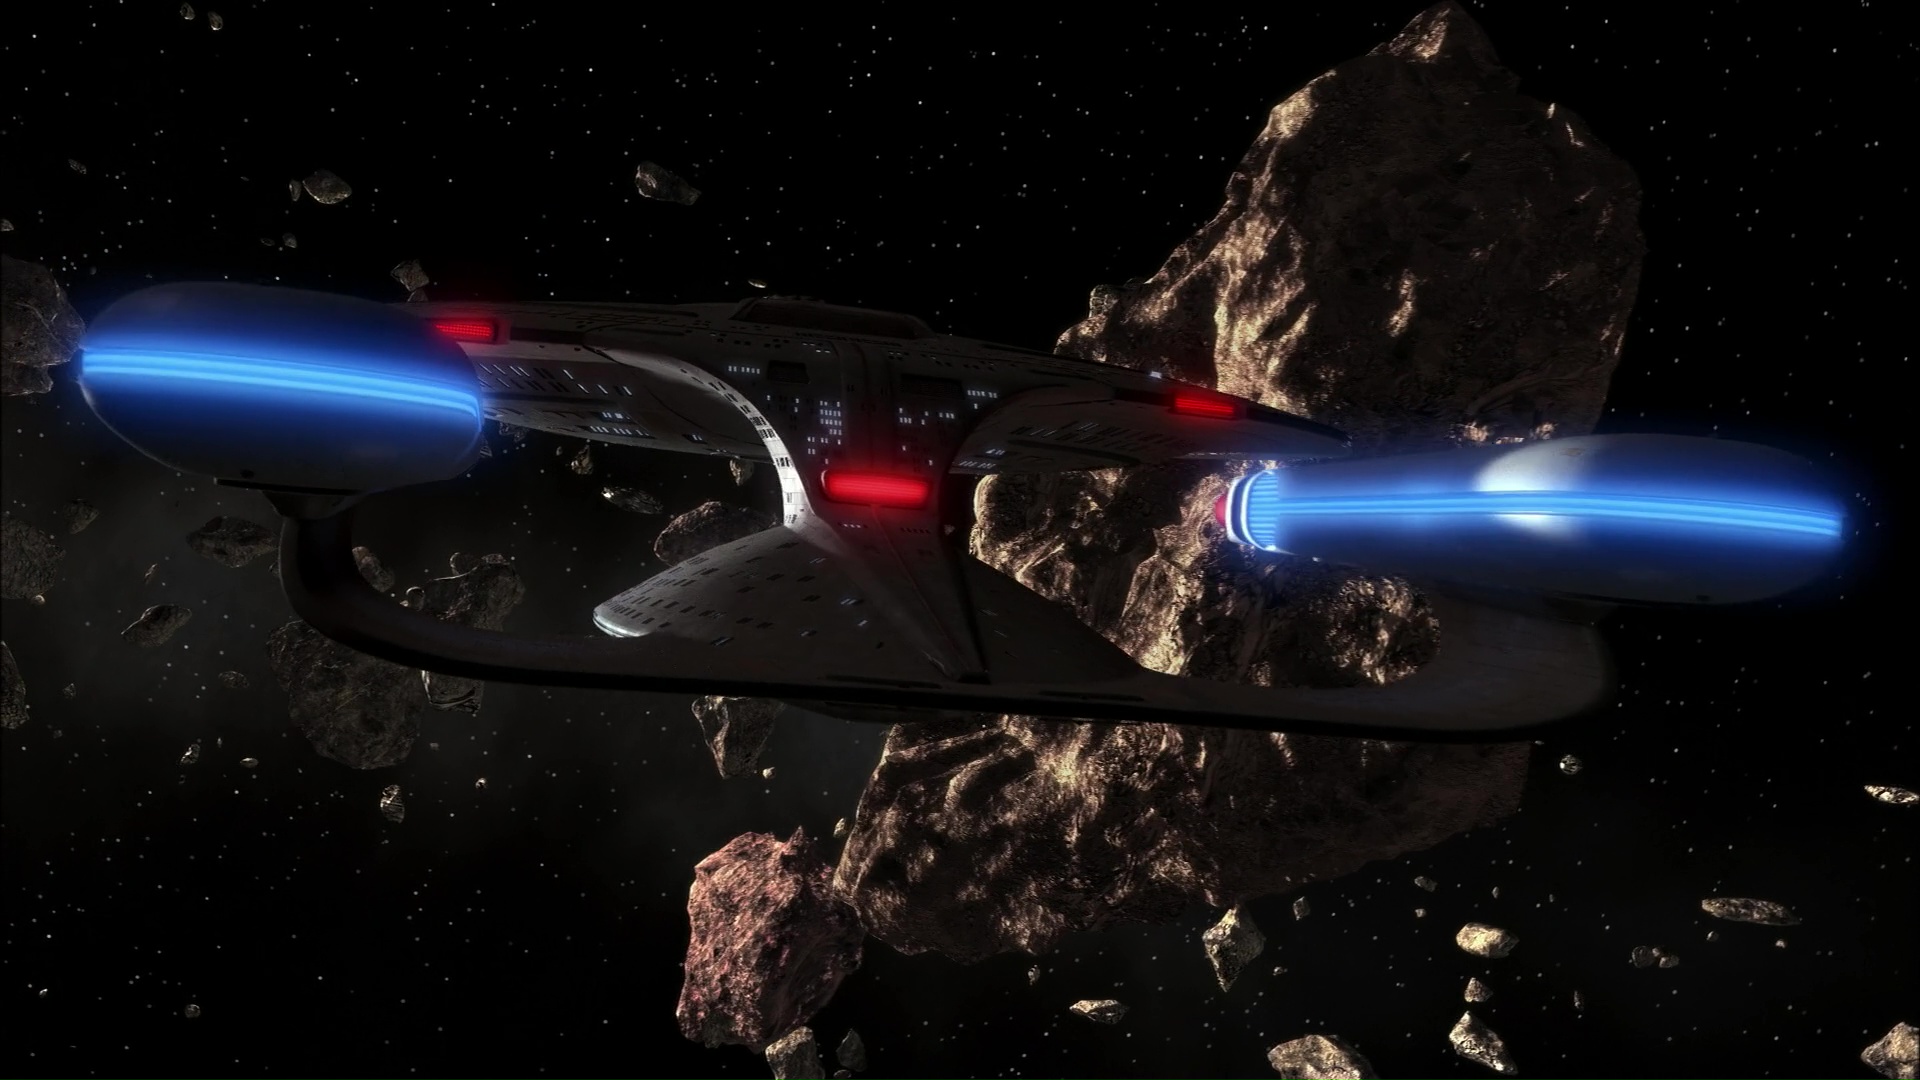 USS_Enterprise_(NCC-1701-D)_enters_asteroid_field.jpg